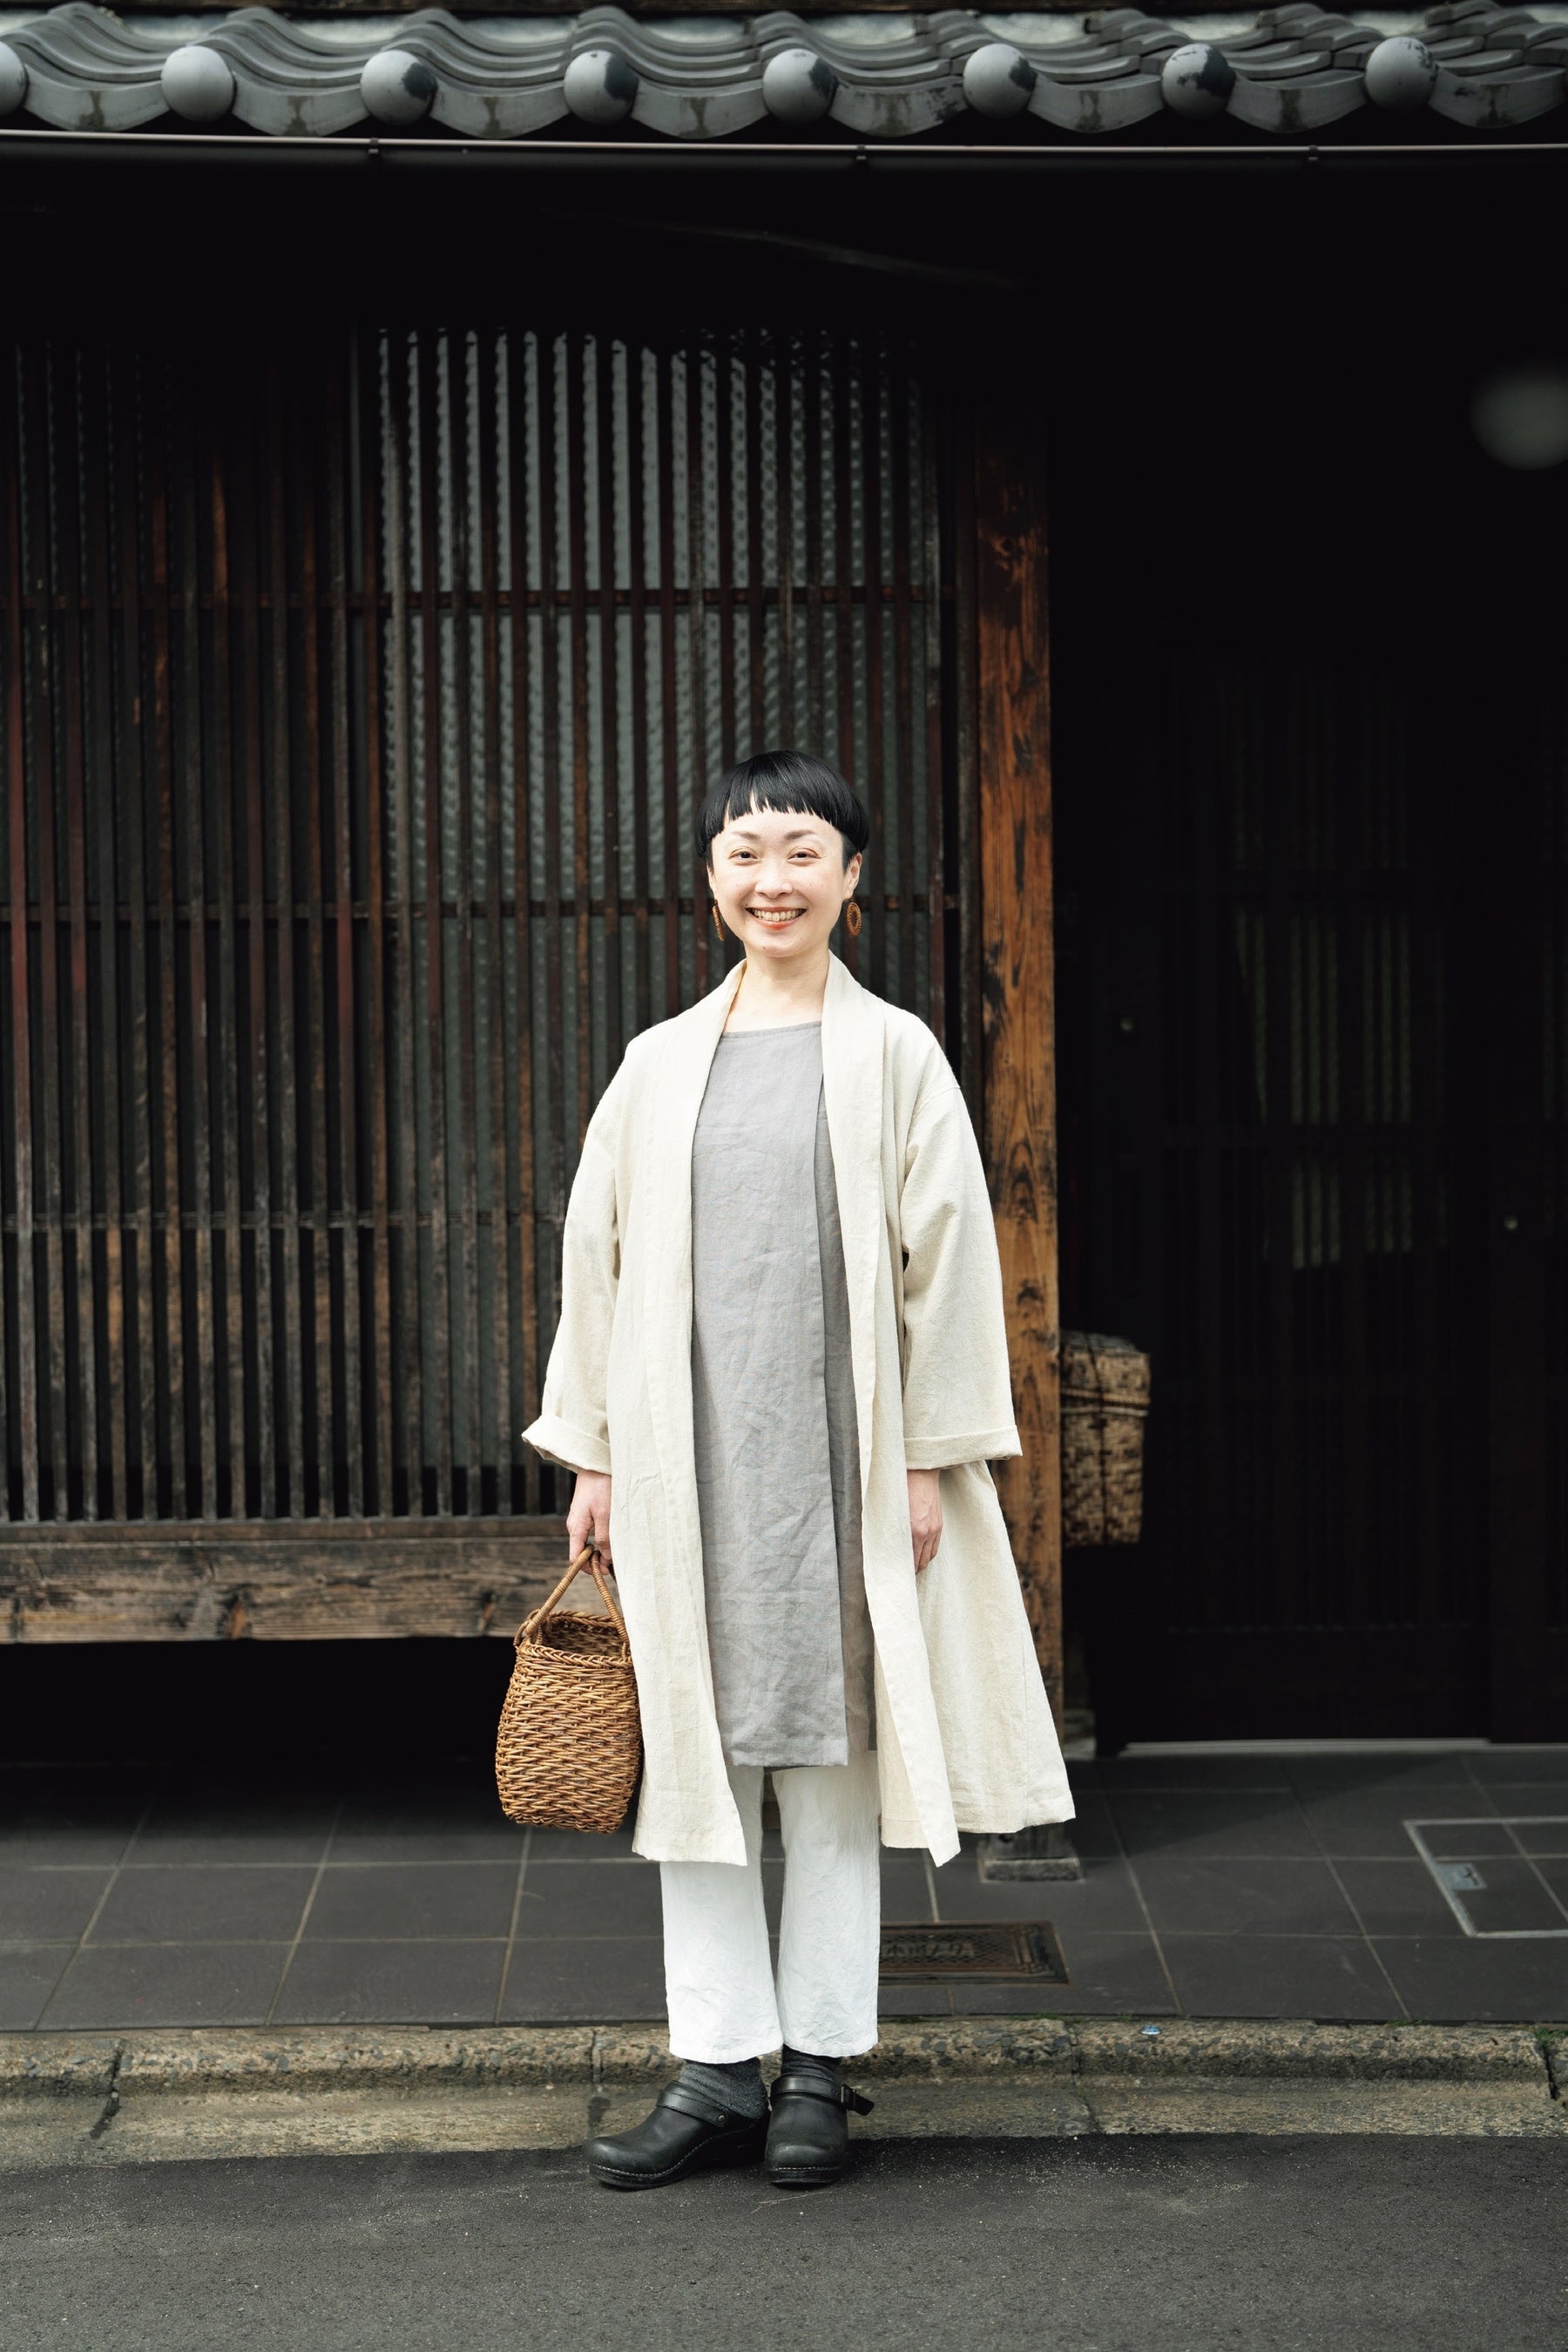 あこがれの京都町家暮らしの魅力とは。手づくり暮らし研究家・美濃羽まゆみさんから学ぶ幸せのかたち。